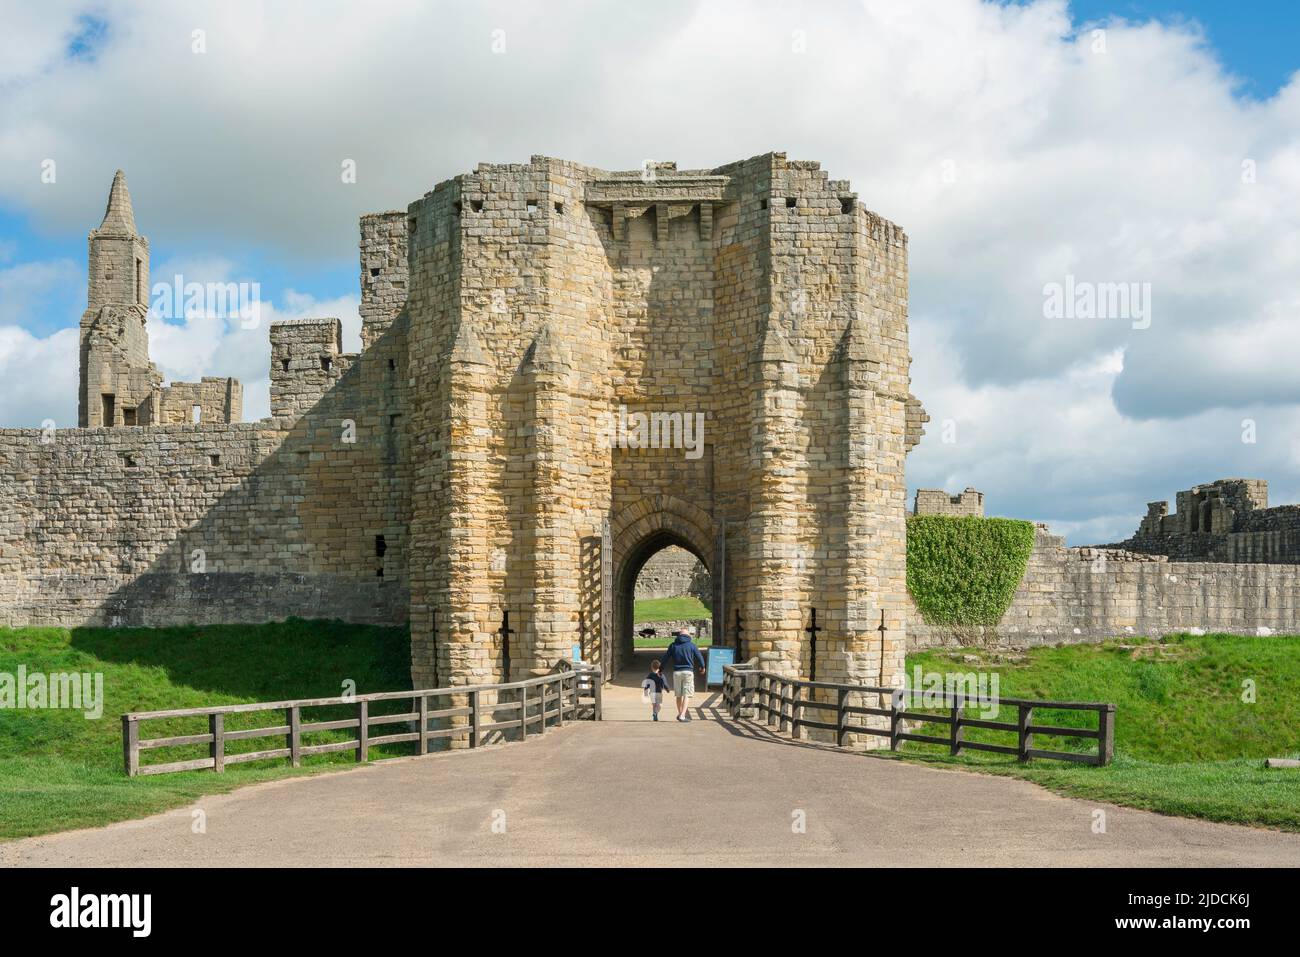 Père fils, vue arrière d'un père qui prend son fils pour visiter un château médiéval par une journée ensoleillée, Northumberland, Angleterre, Royaume-Uni Banque D'Images